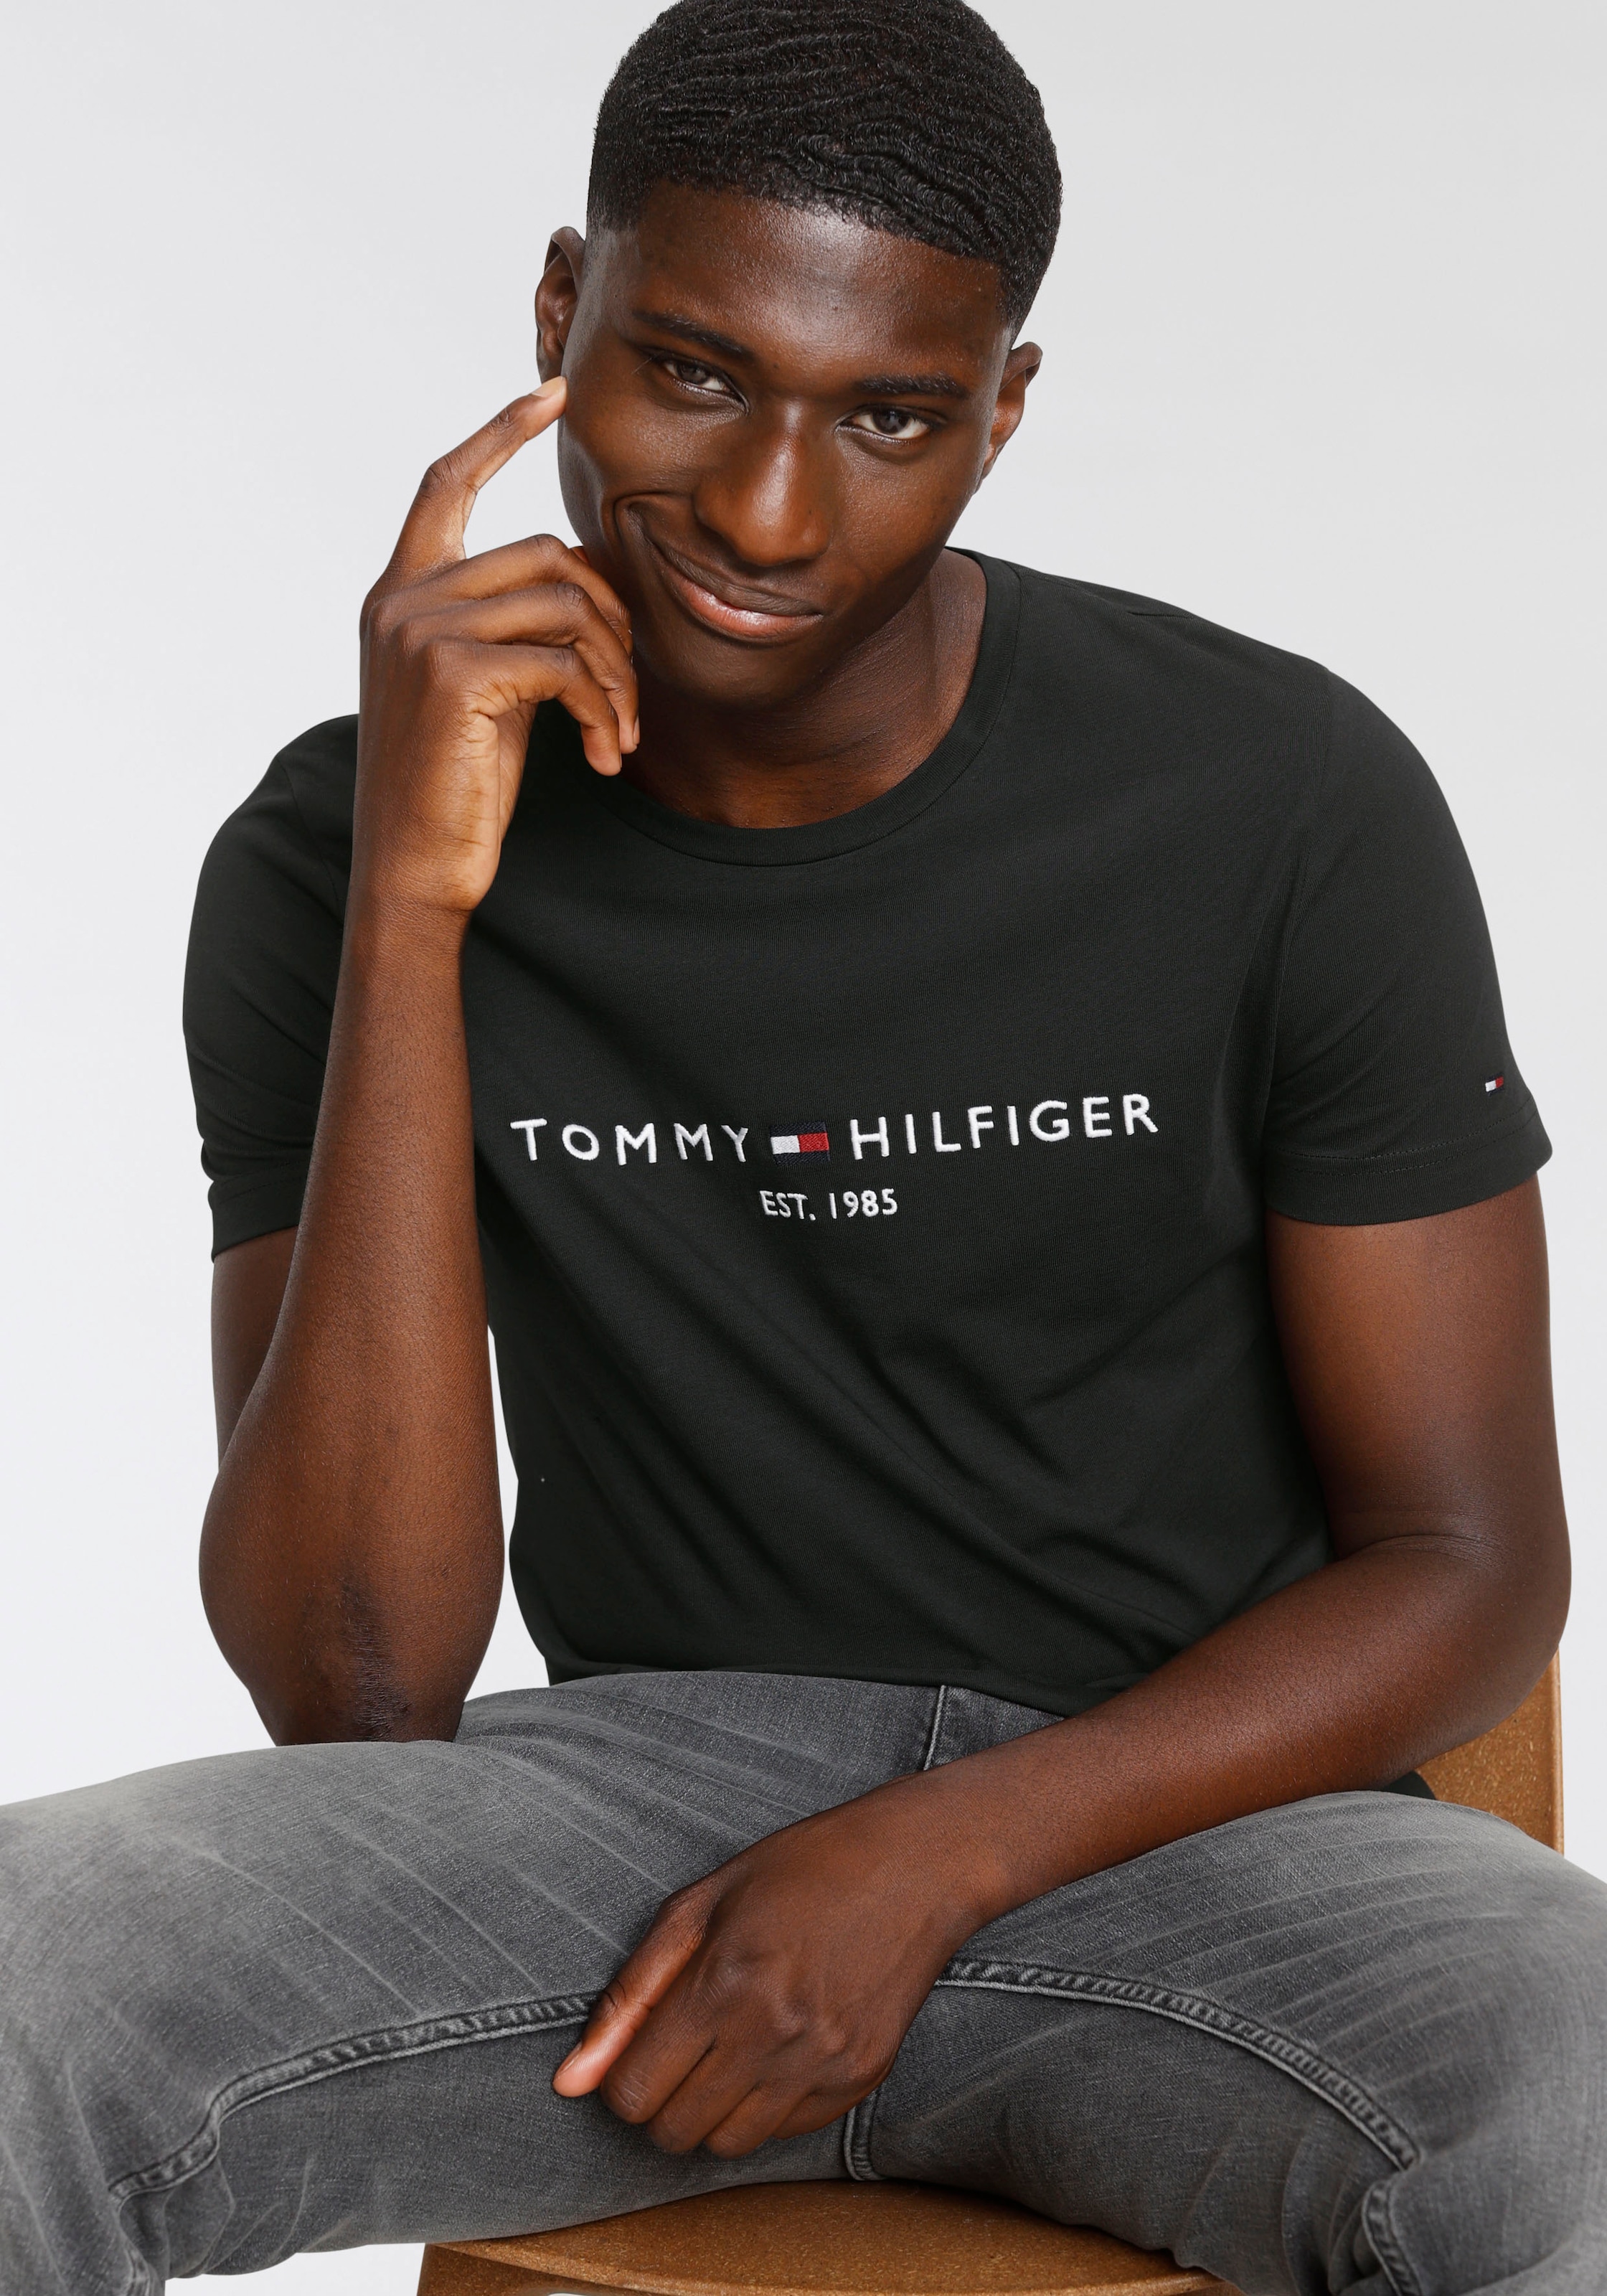 Tommy Hilfiger T-Shirt »TOMMY FLAG HILFIGER TEE« online bestellen bei OTTO